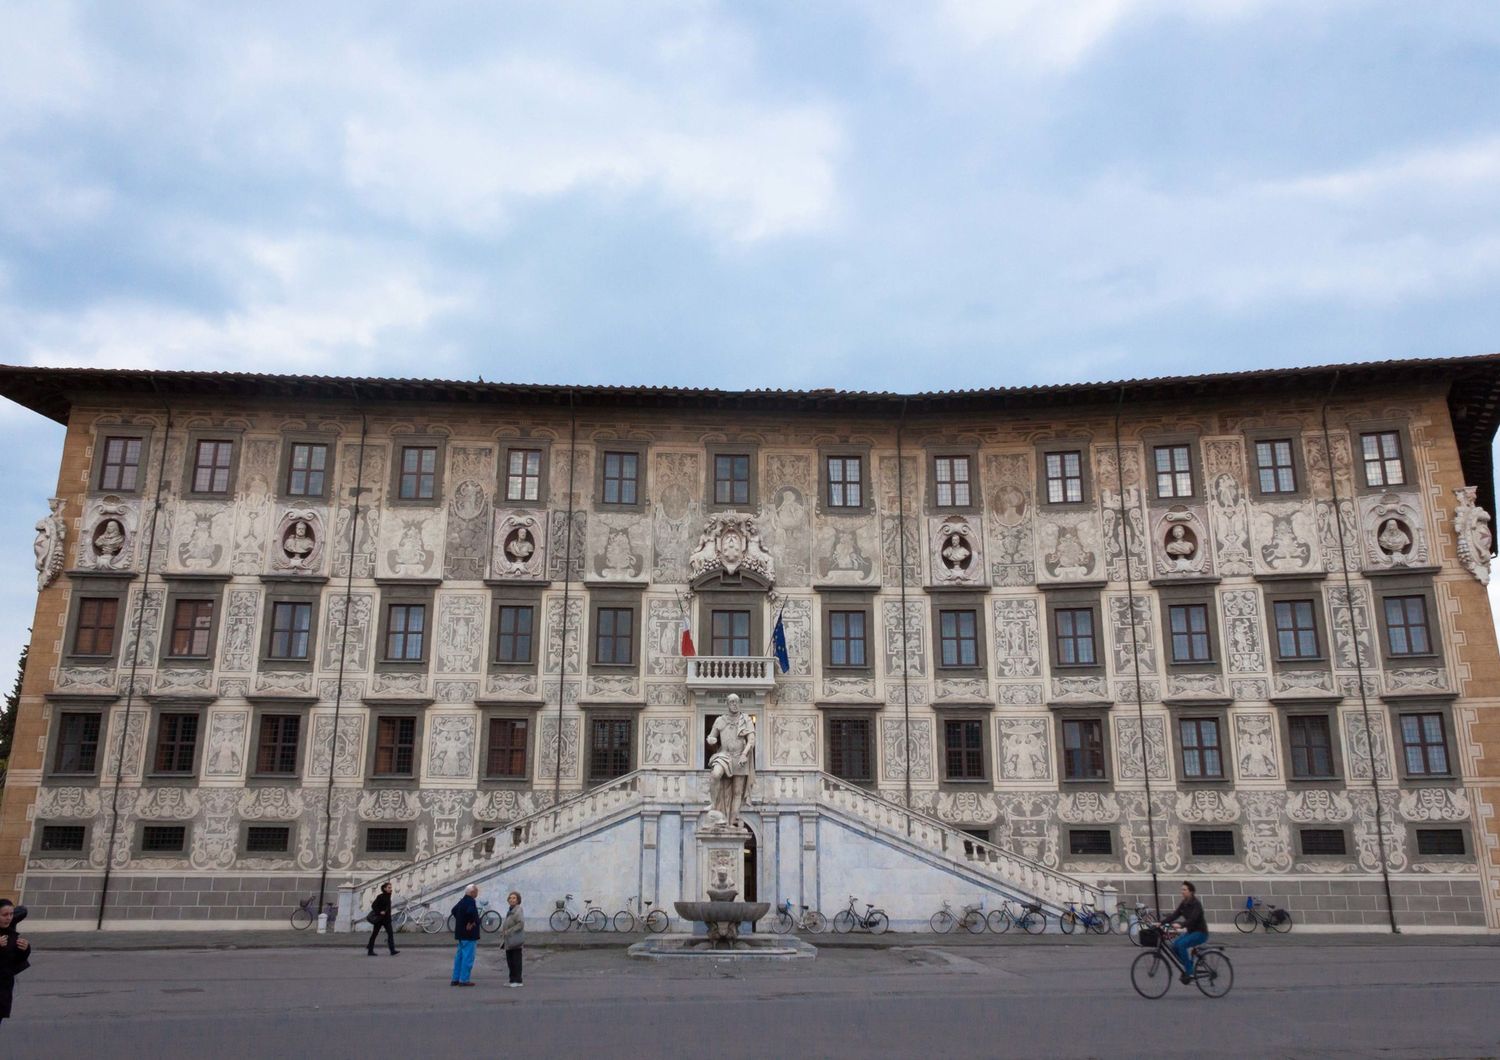 La Scuola Normale di Pisa